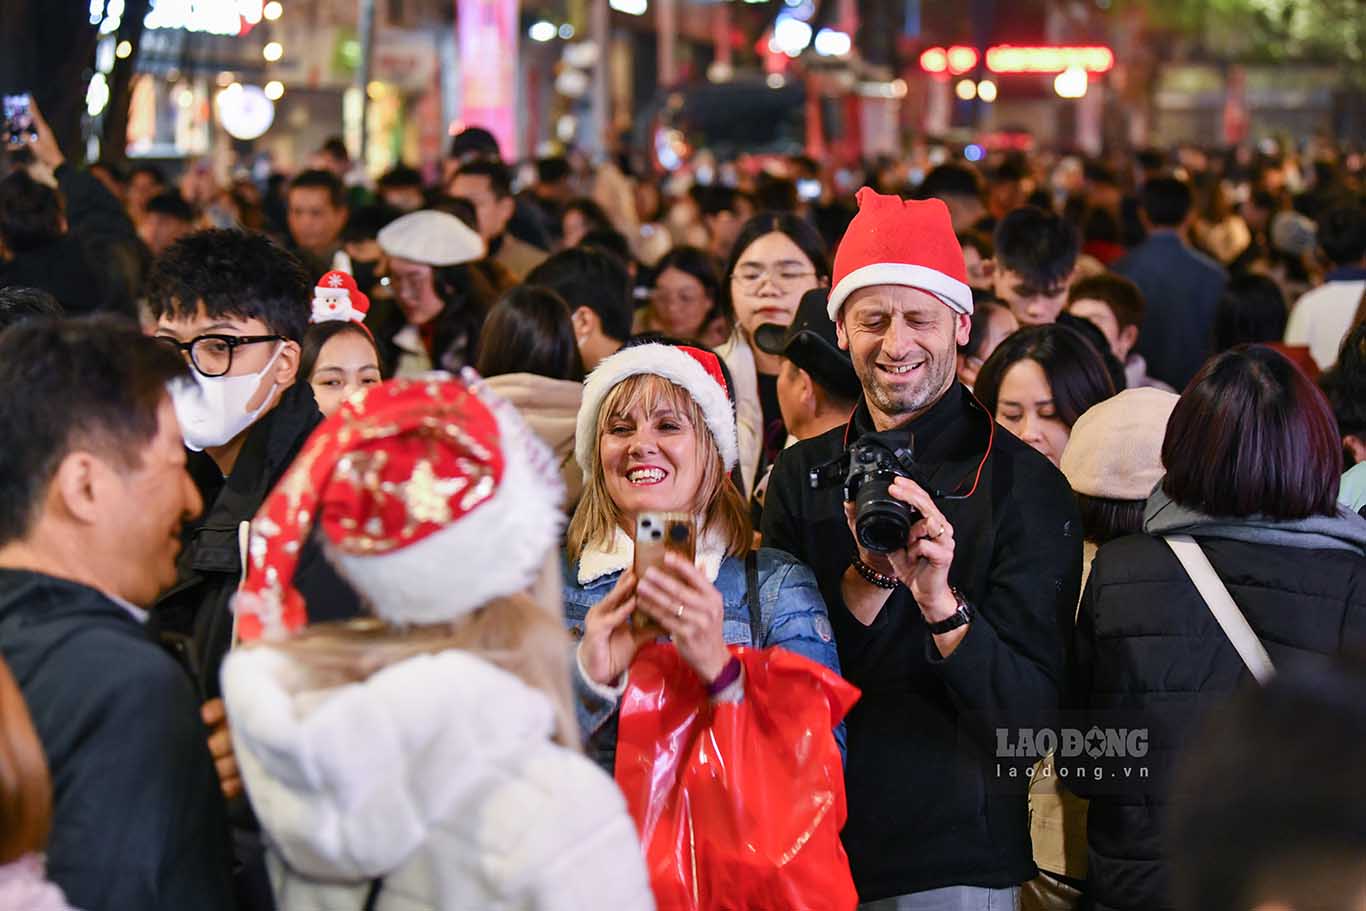 Nhiều du khách nước ngoài cùng tham gia vào các hoạt động của đêm Giáng sinh tại đây.